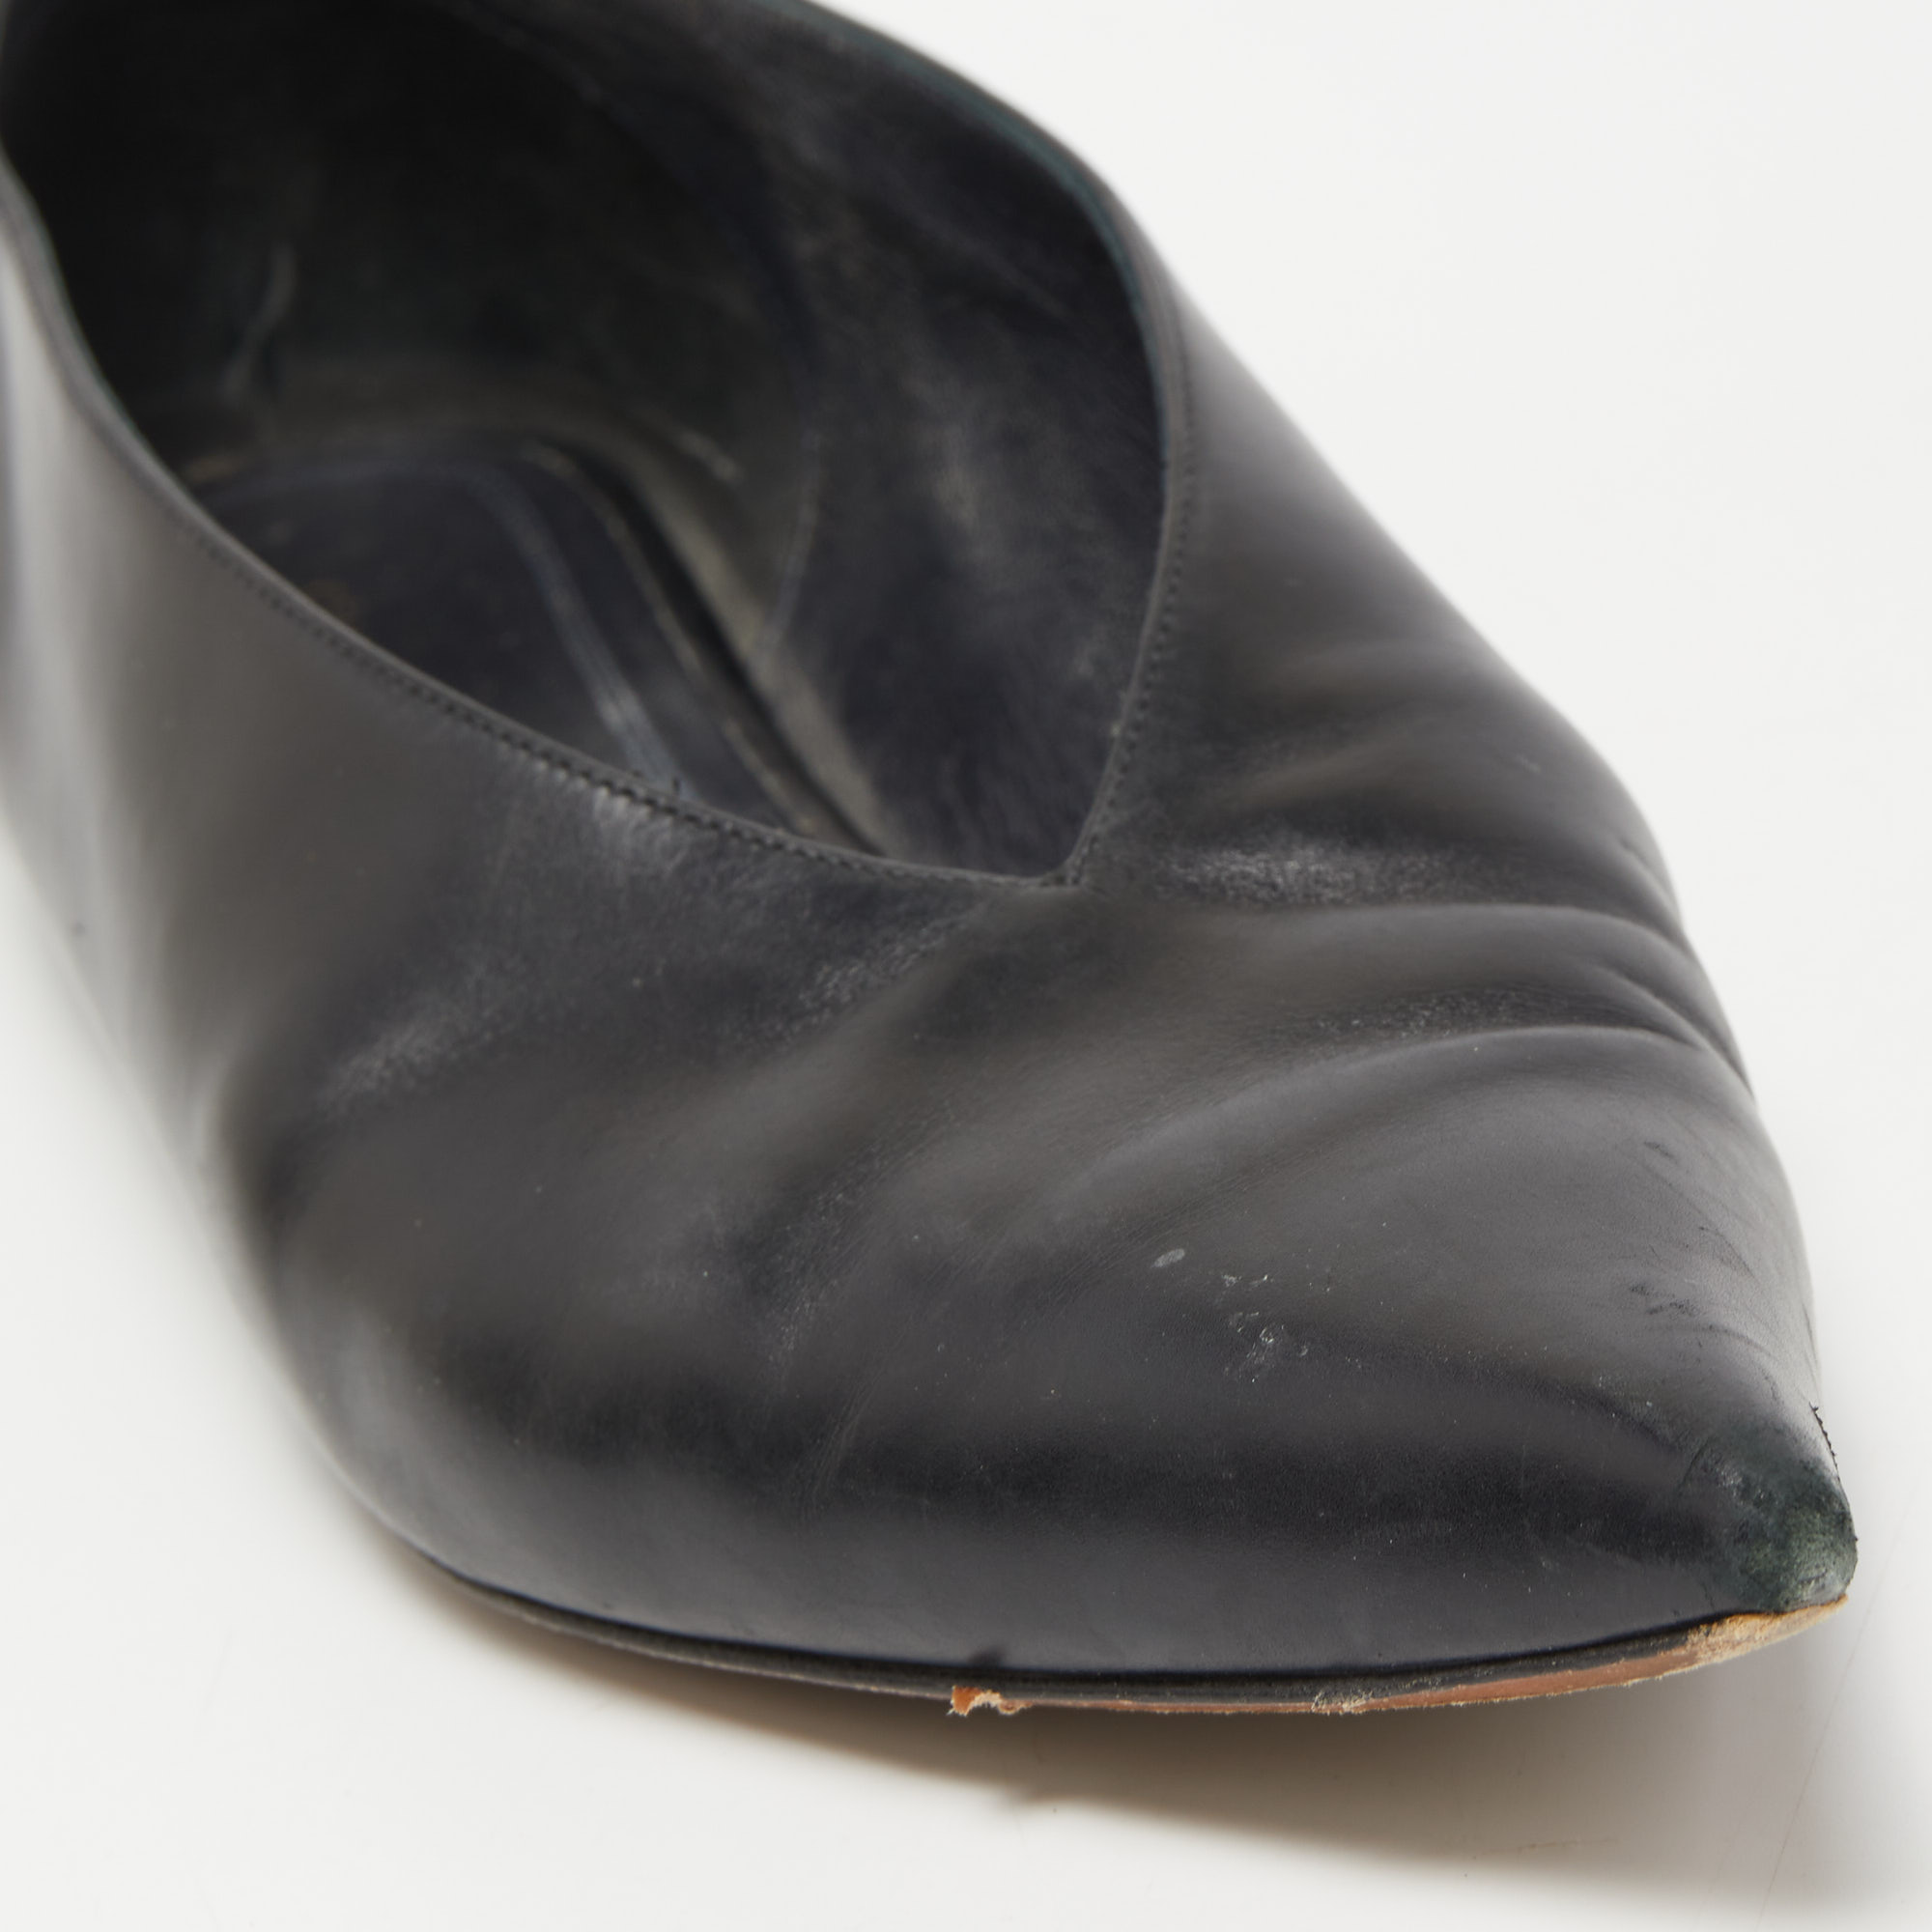 Celine Black Leather V-Neck Ballet Flats Size 35.5